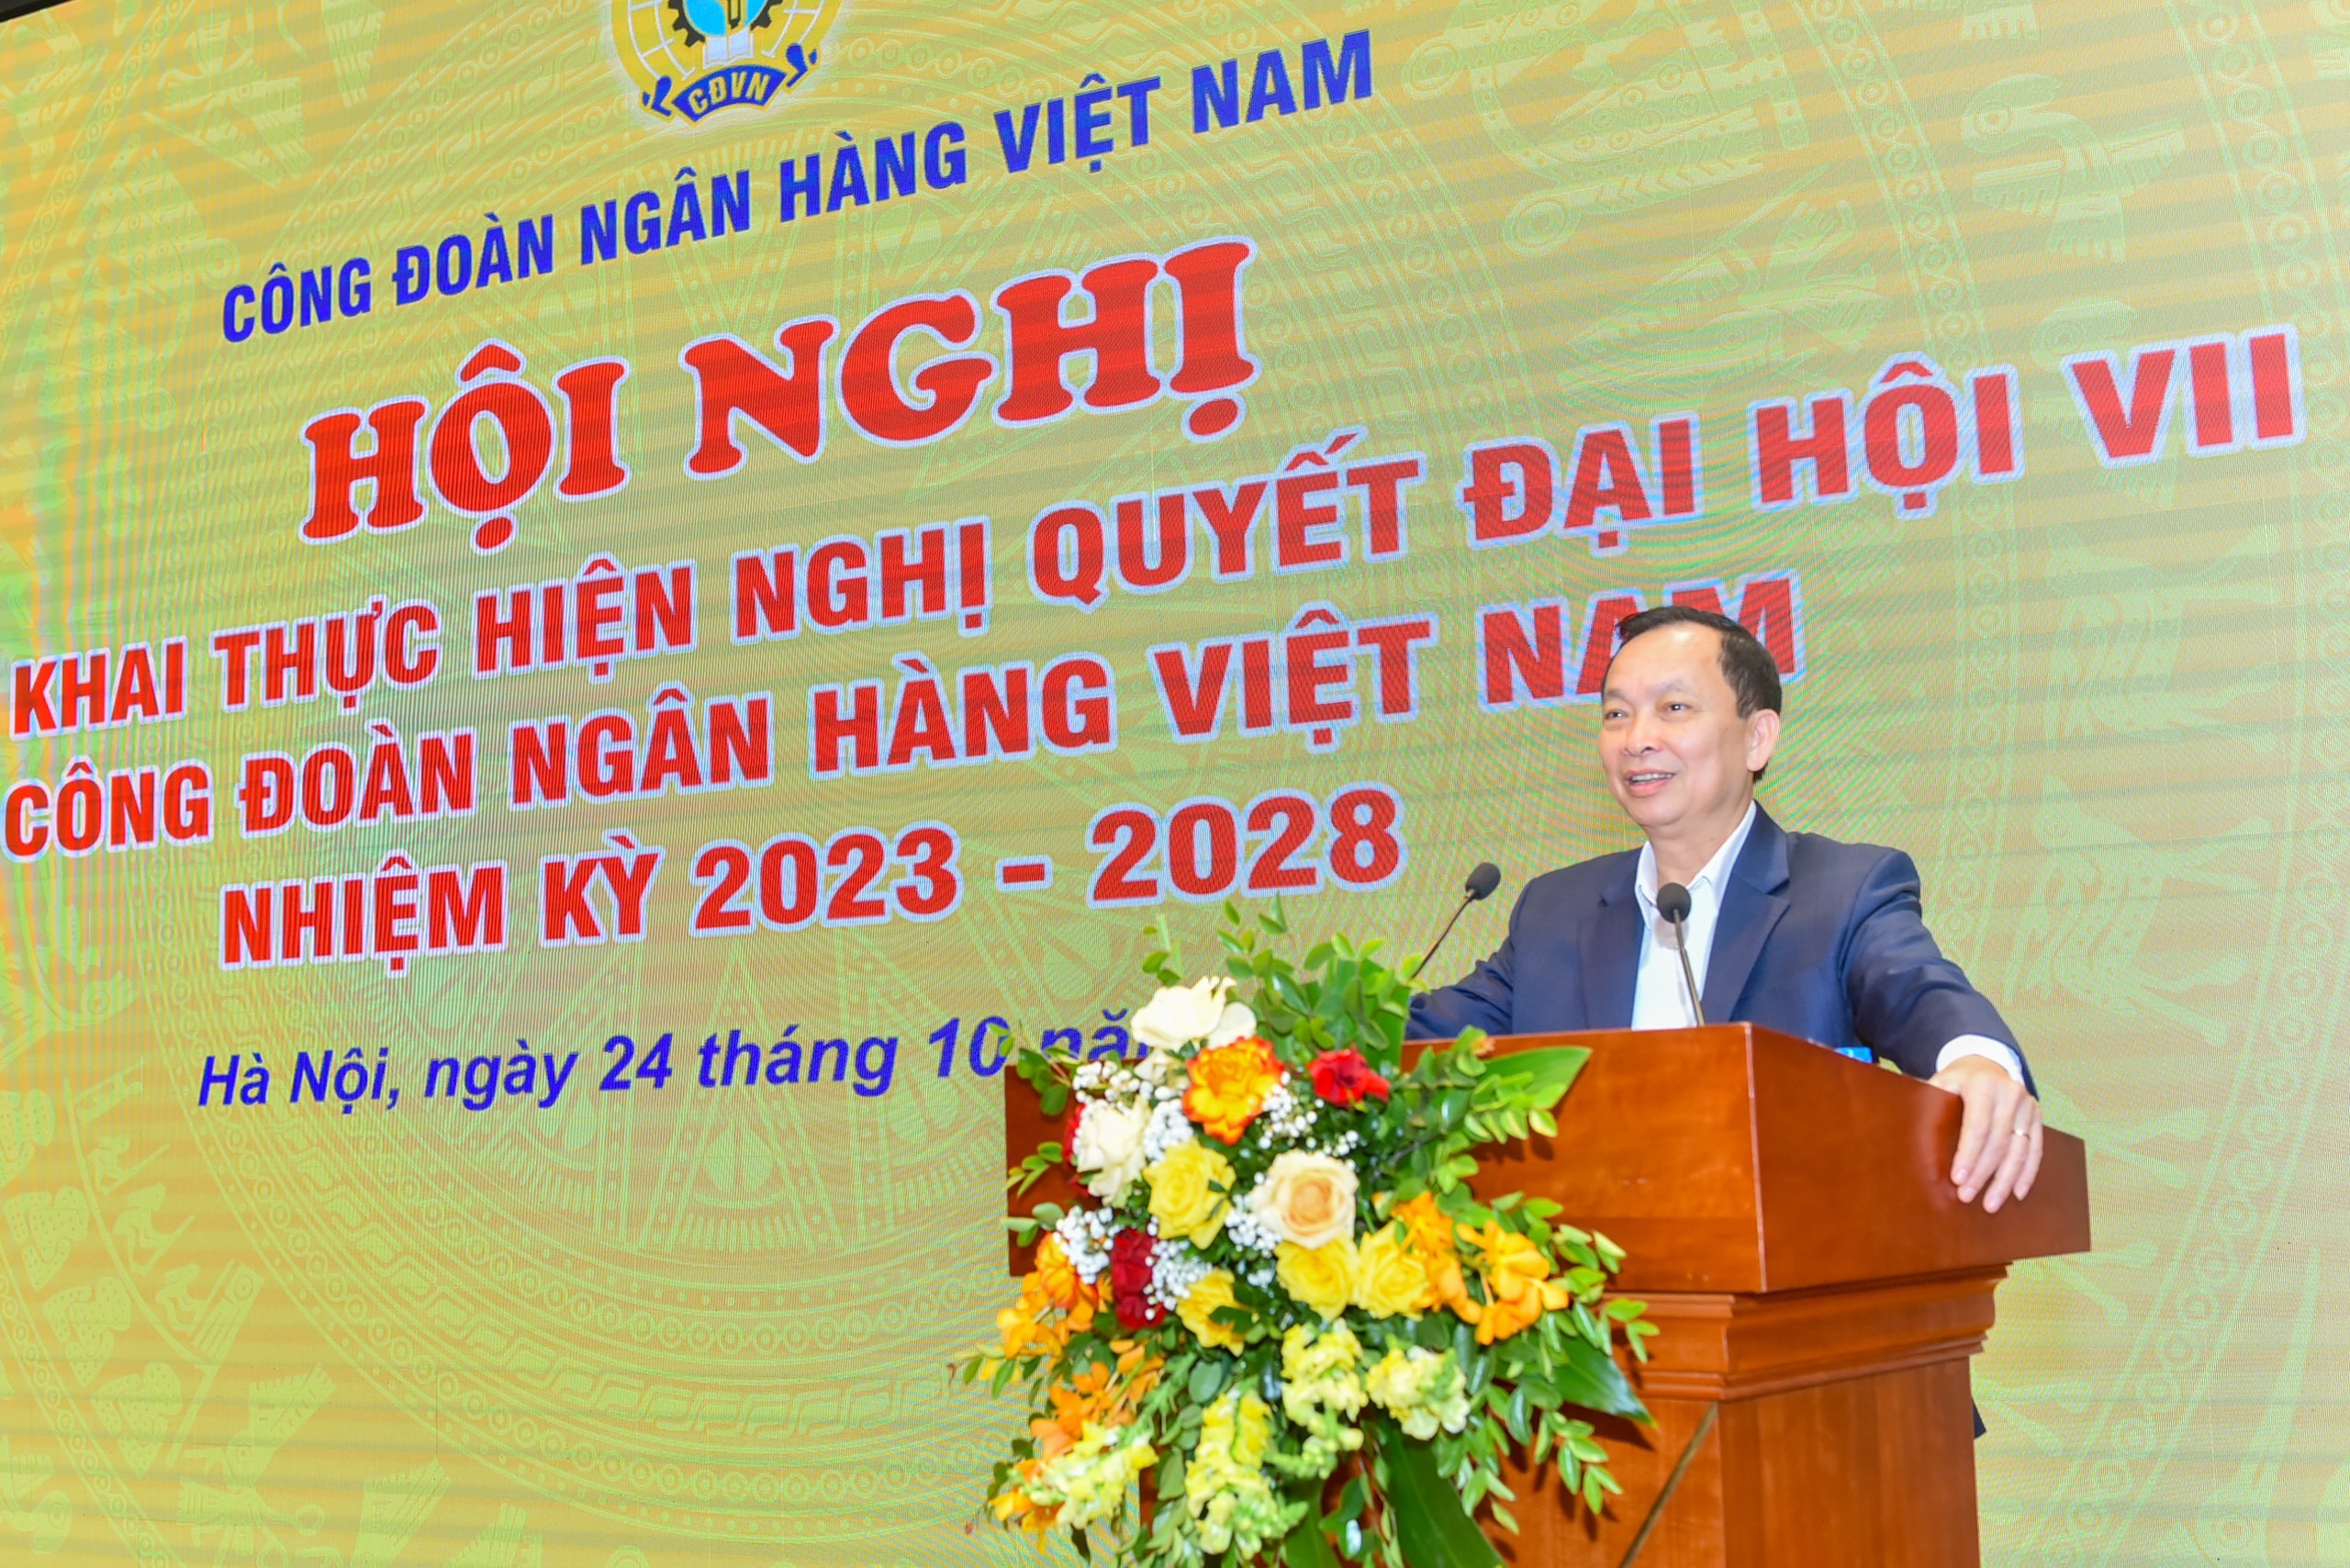 Công đoàn Ngân hàng Việt Nam: Để Nghị quyết Đại hội sớm lan tỏa và đi vào thực tiễn